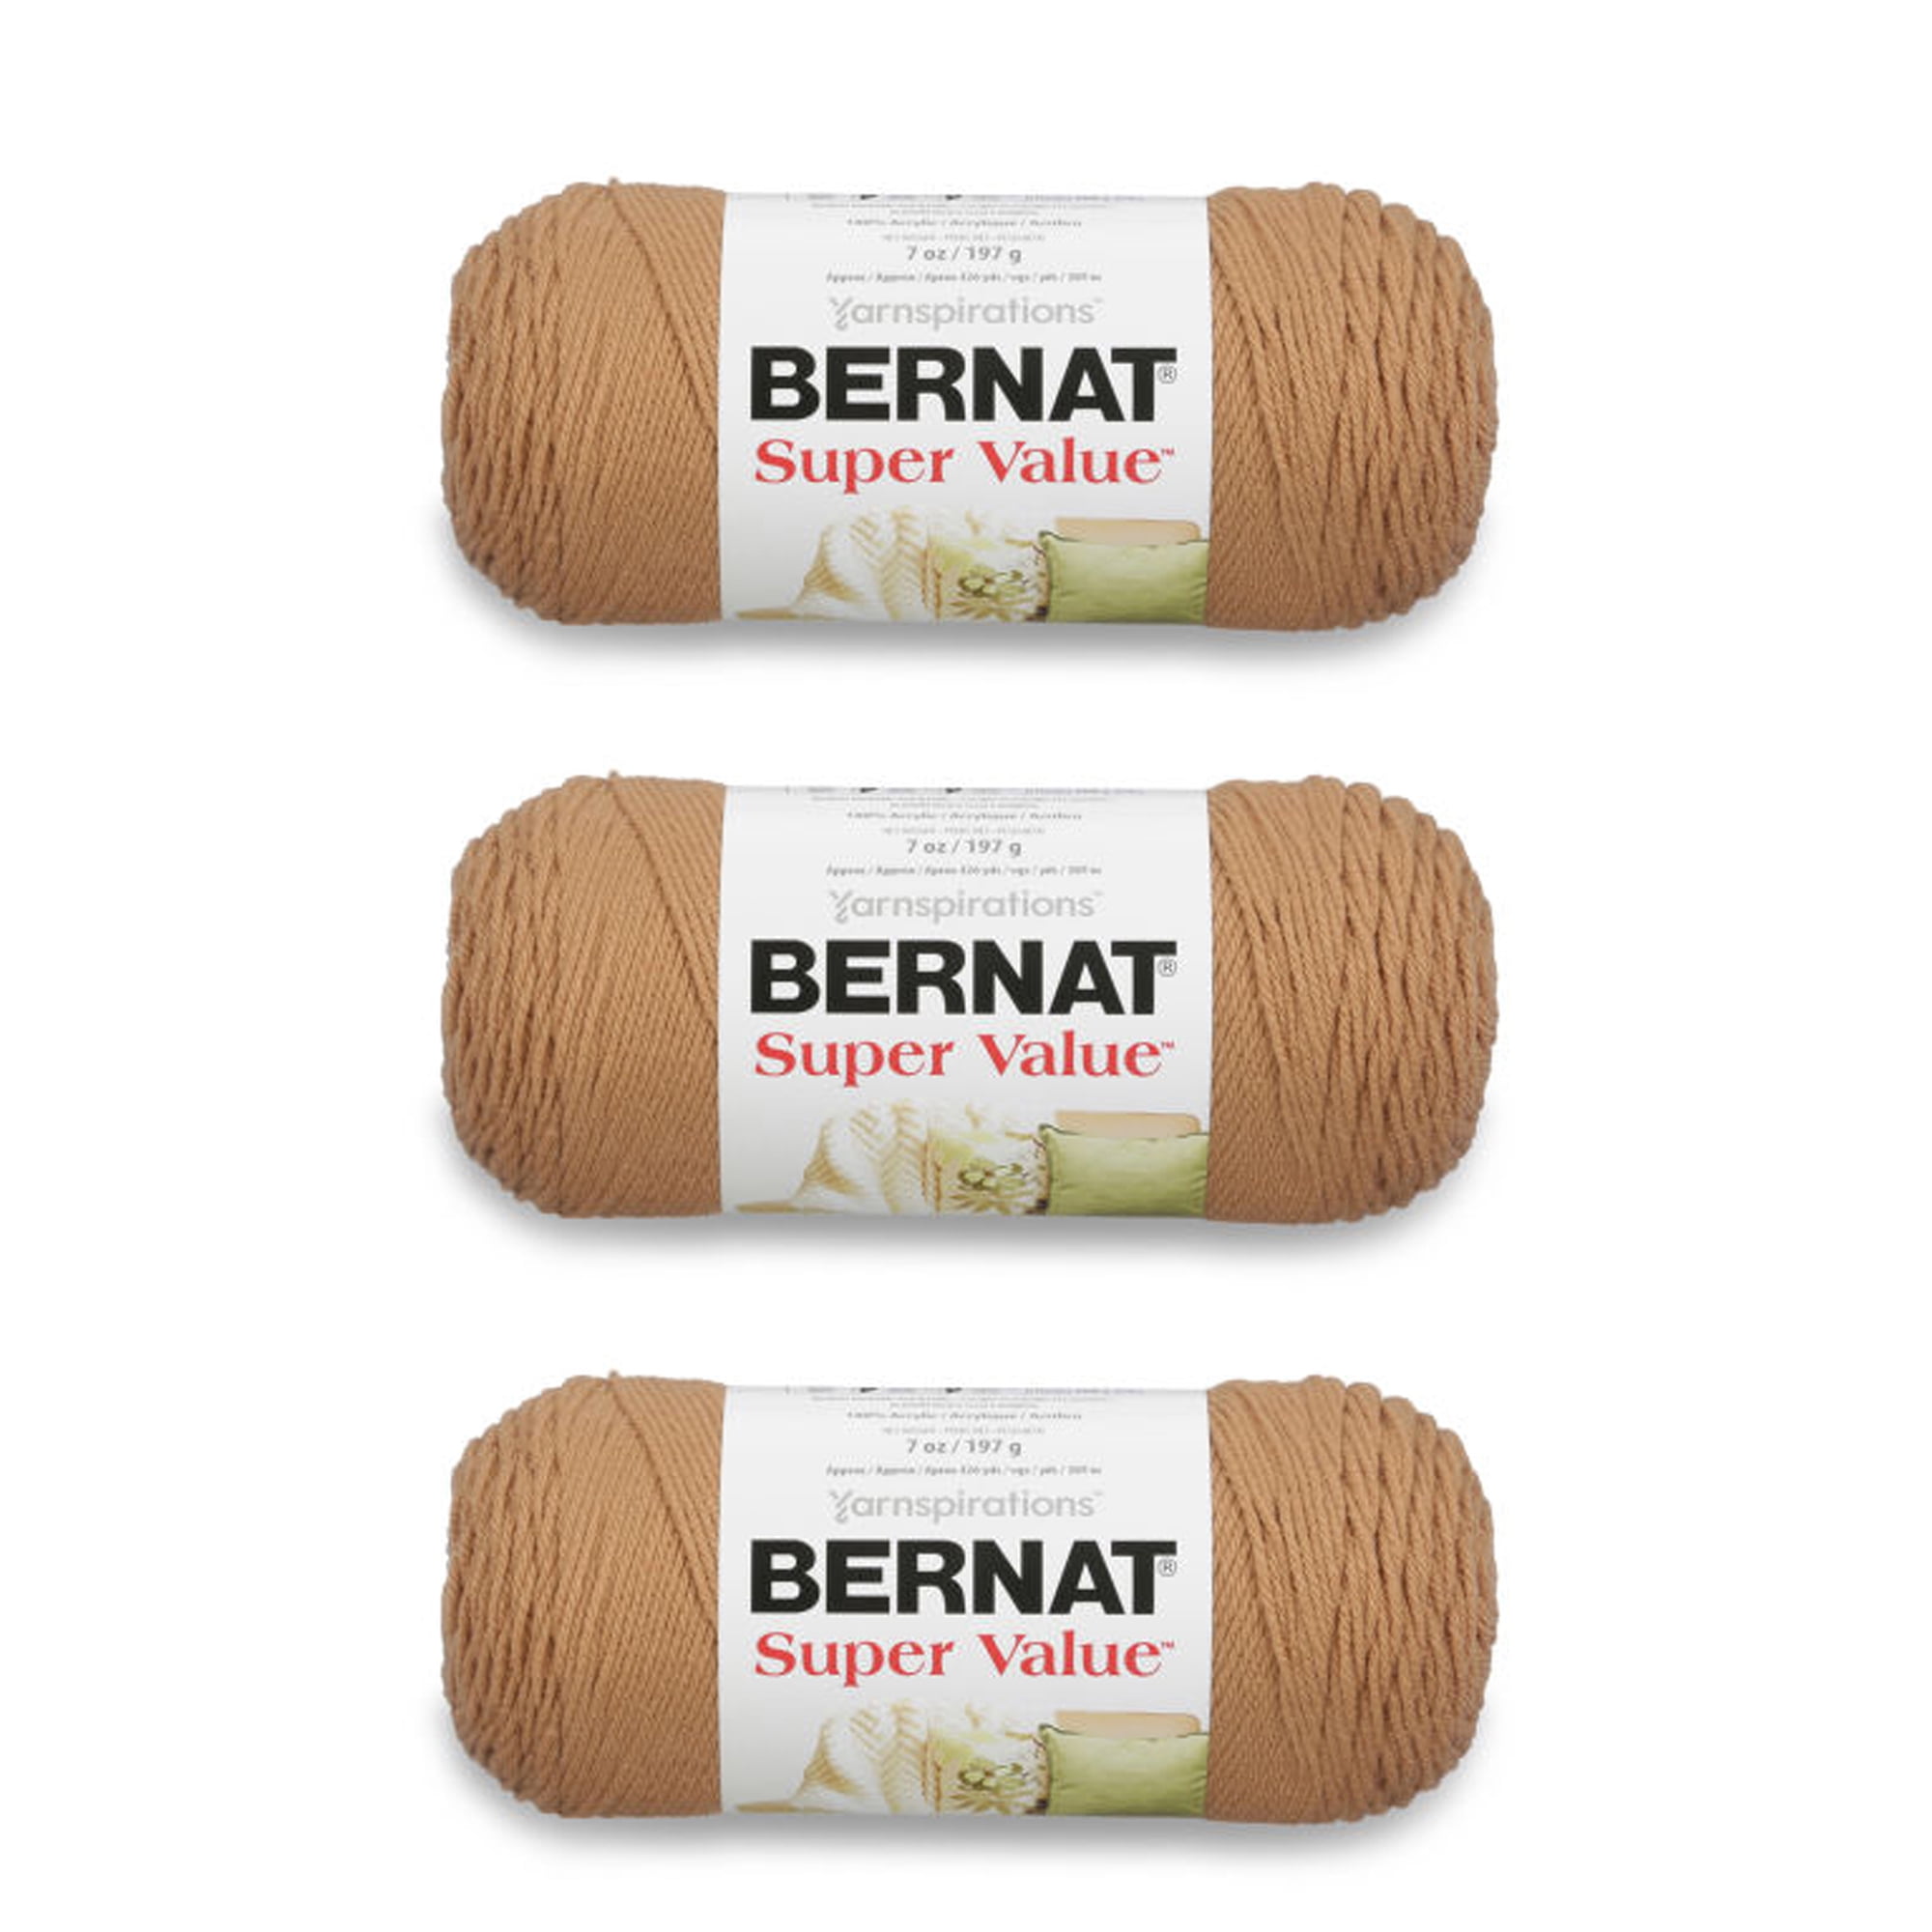 Bernat Super Value Yarn - 7 oz - Berry - 2 Skein Bundle - Total of 2 Skeins